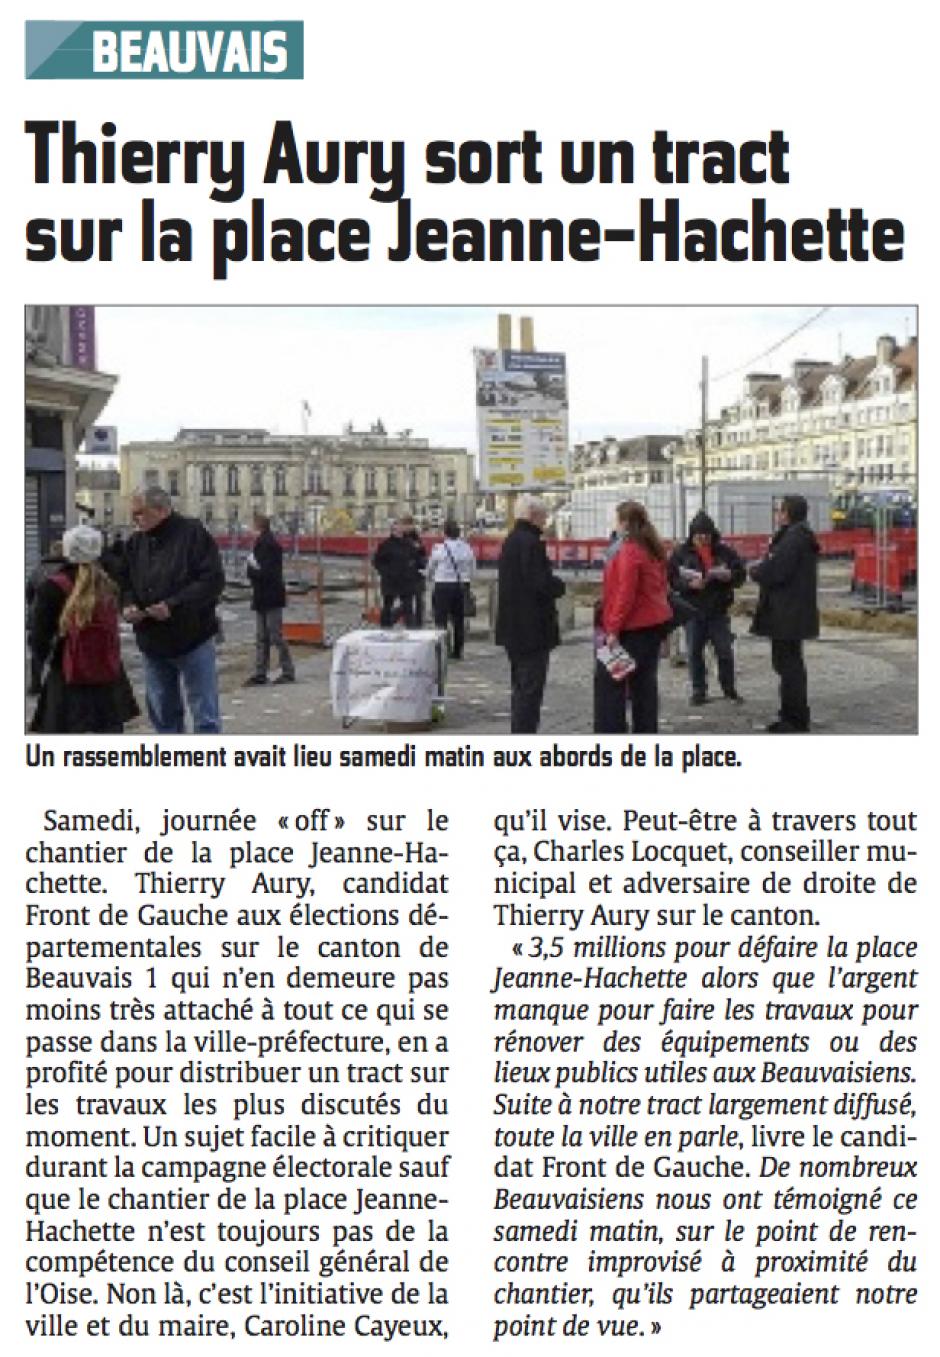 20150303-CP-Beauvais-D2015-Thierry Aury sort un tract sur la place Jeanne-Hachette